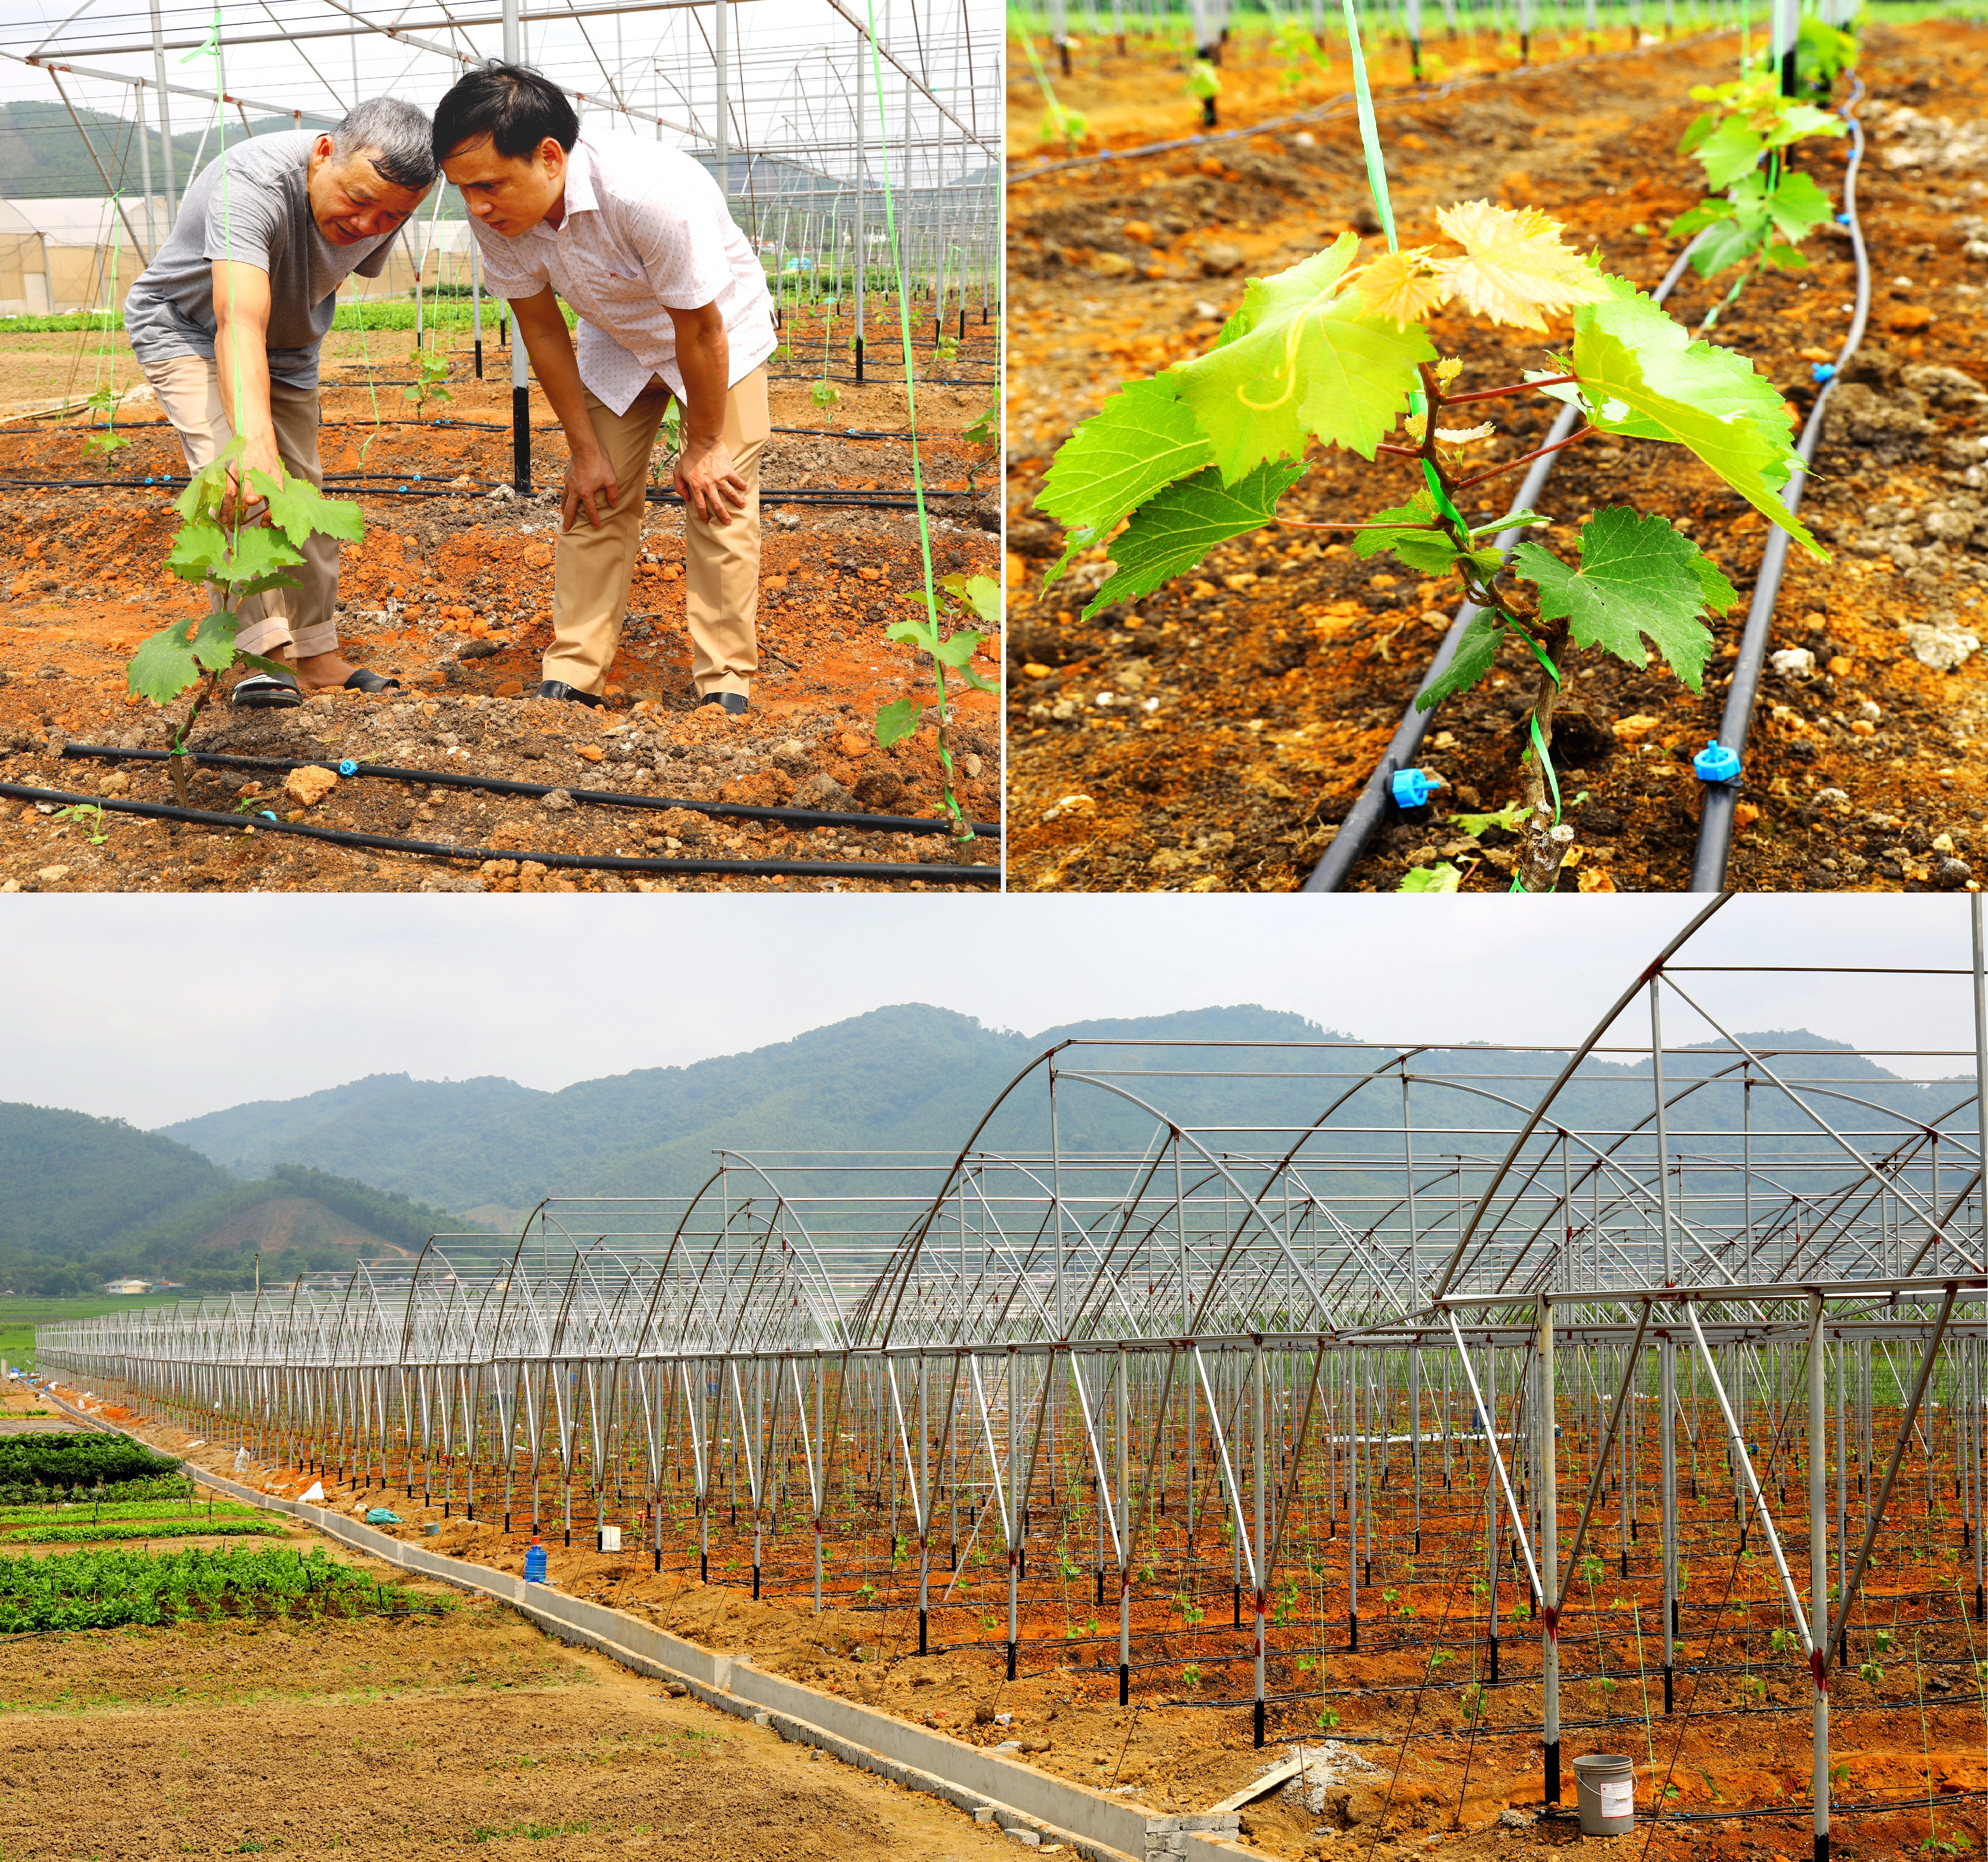 Hơn 5 ha nho được trồng trong nhà lưới đã lên xanh ở Thị xã Thái Hòa. Ảnh Nguyên Nguyên